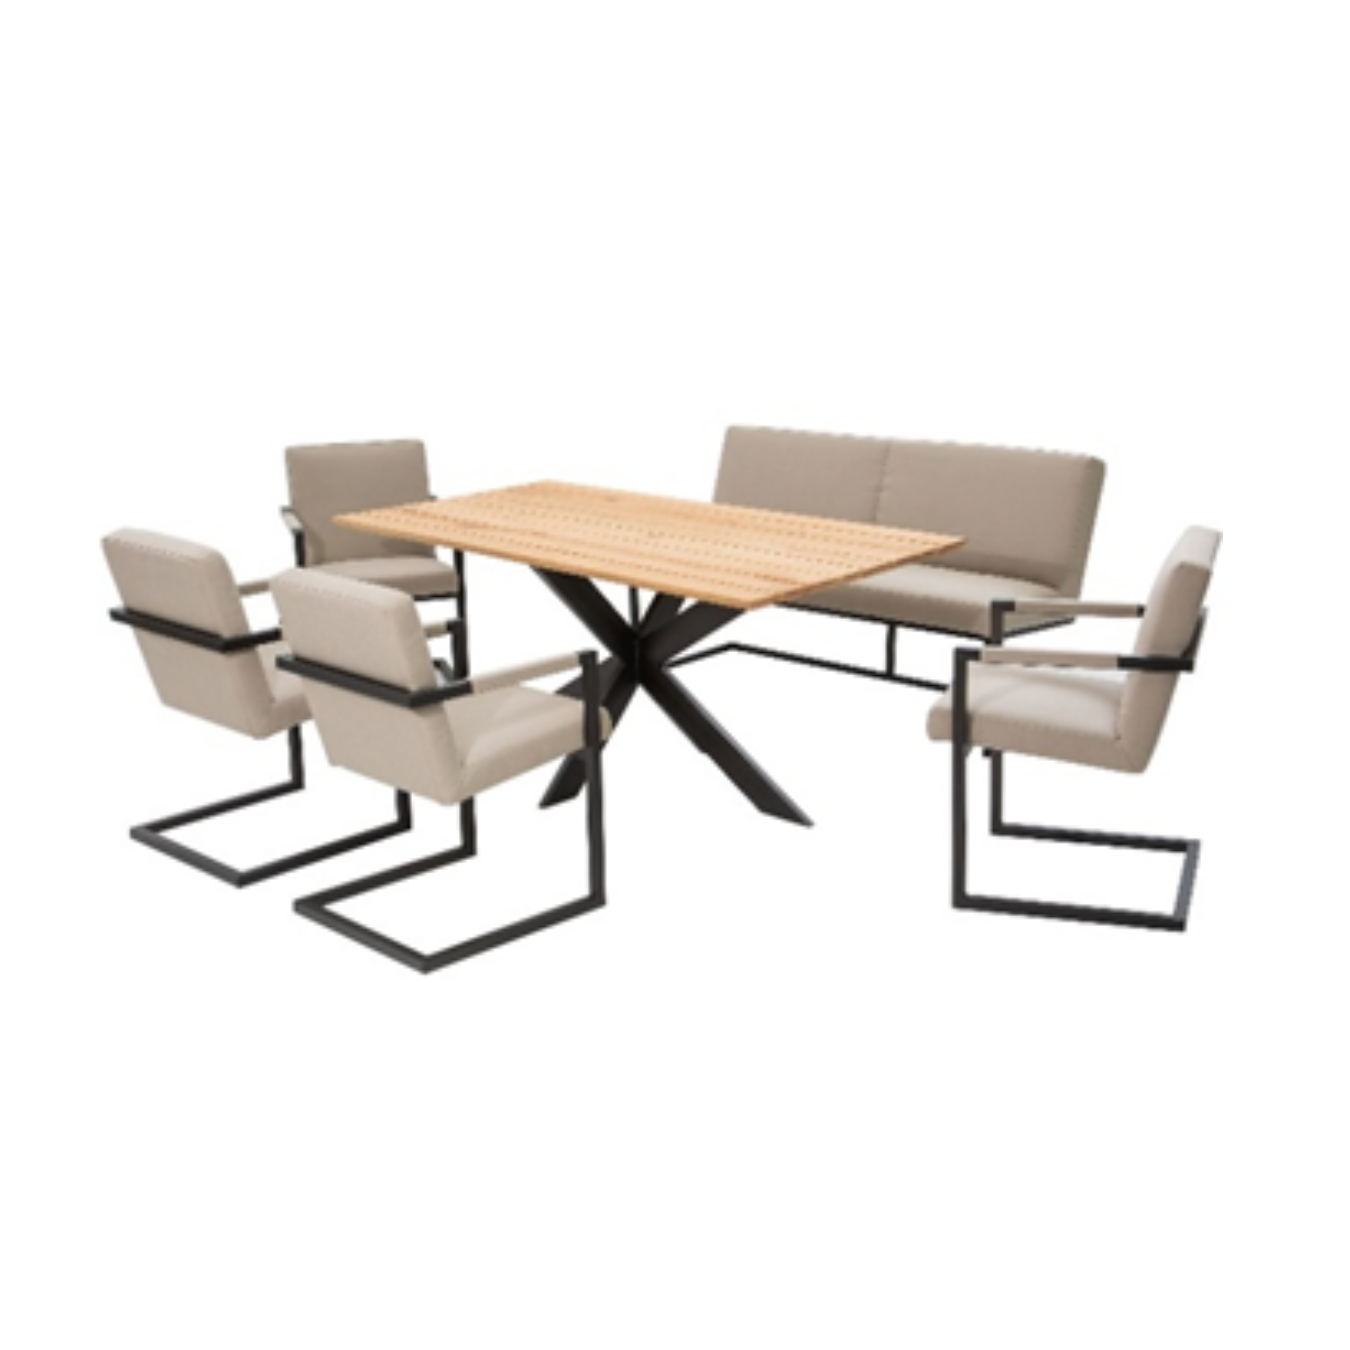 Schwingstuhl für Terrasse und Garten | Modell FLEET